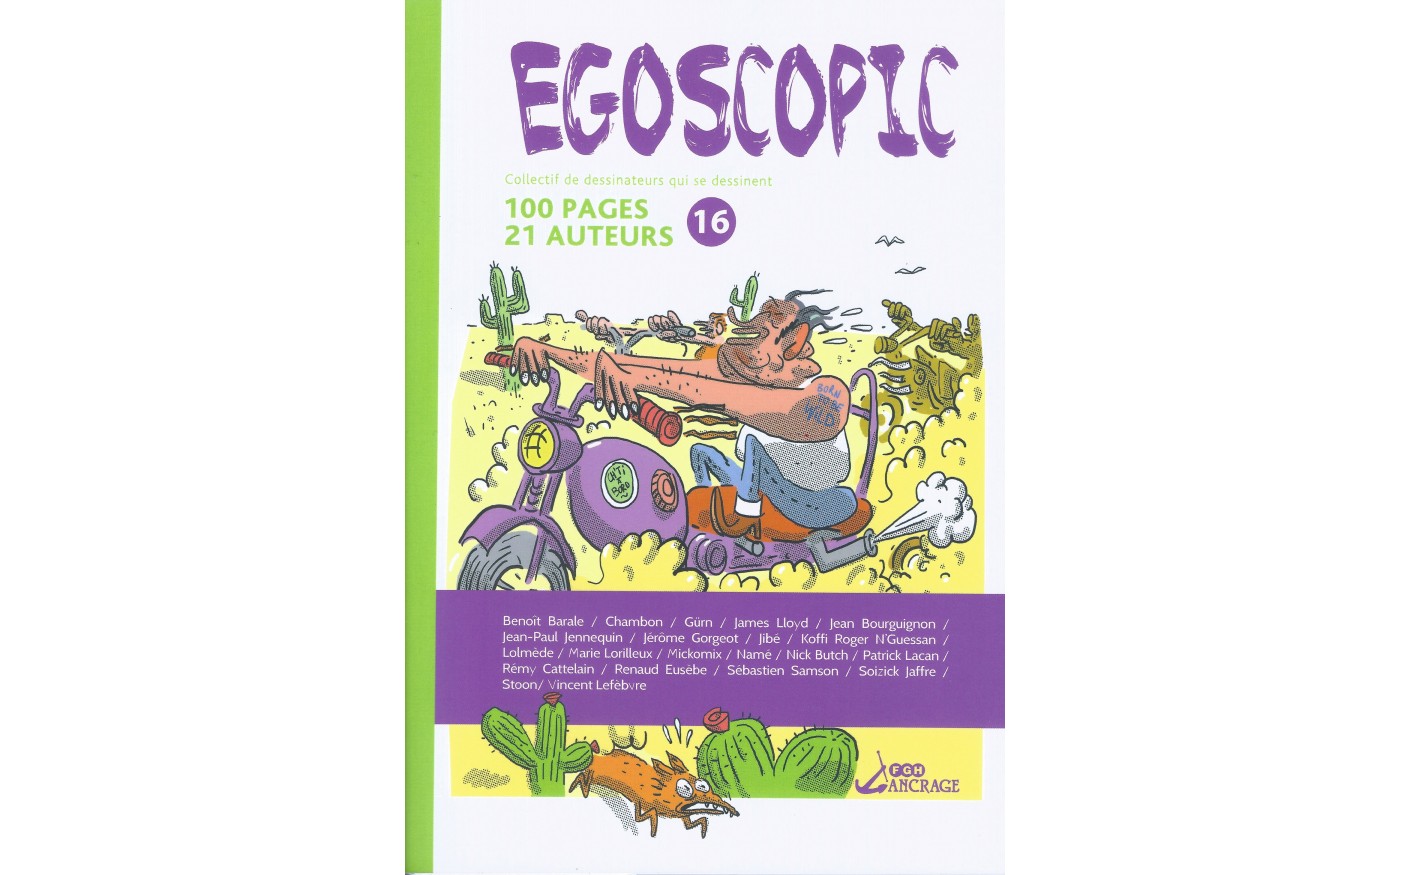 EGOSCOPIC-16